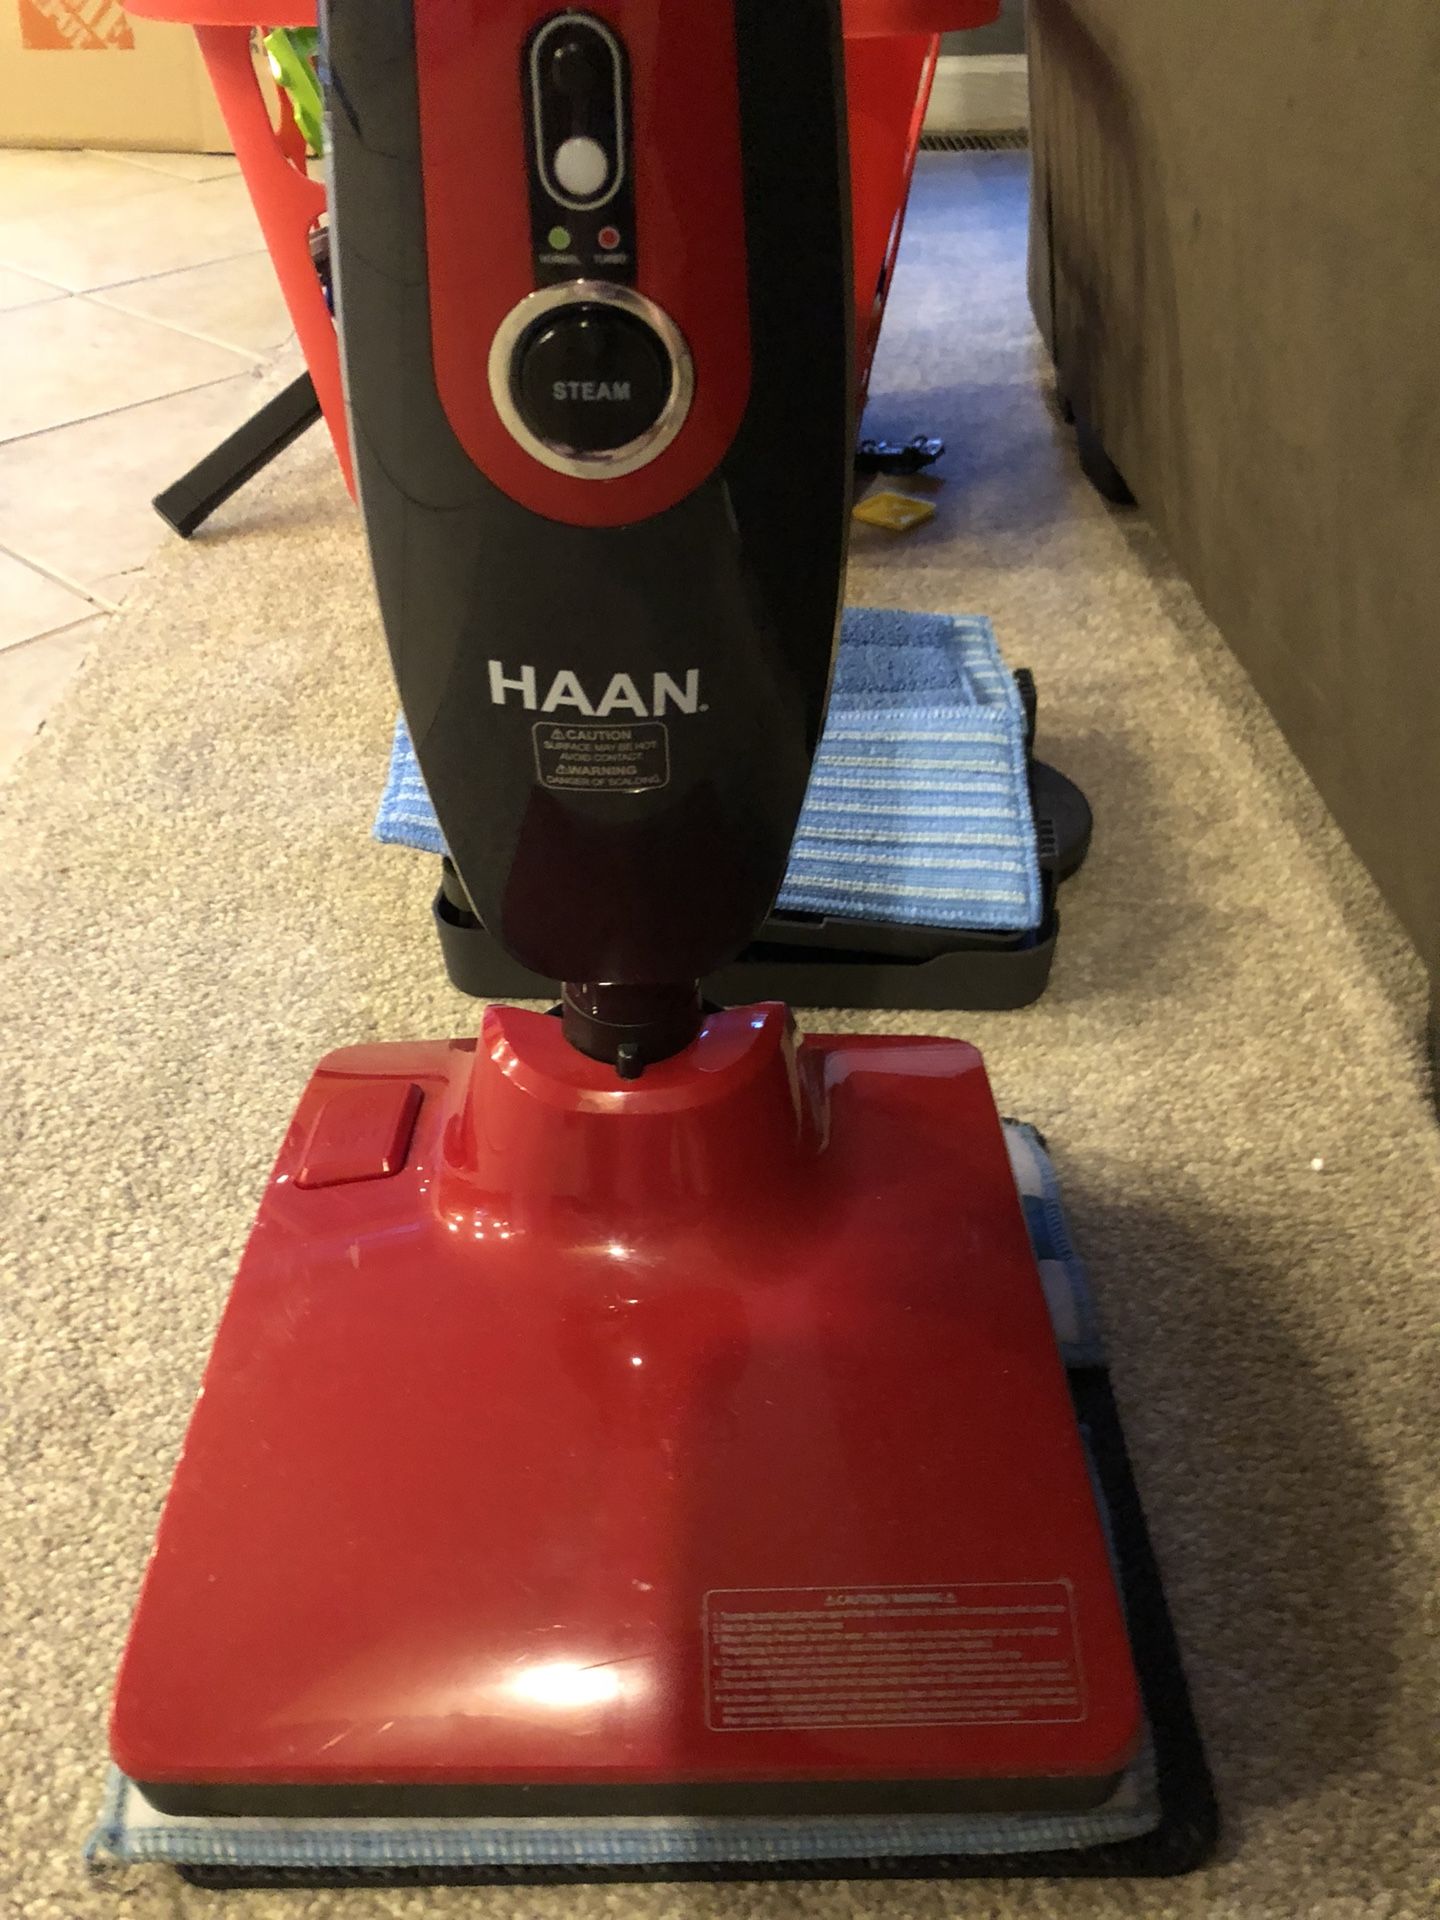 Haan steam mop